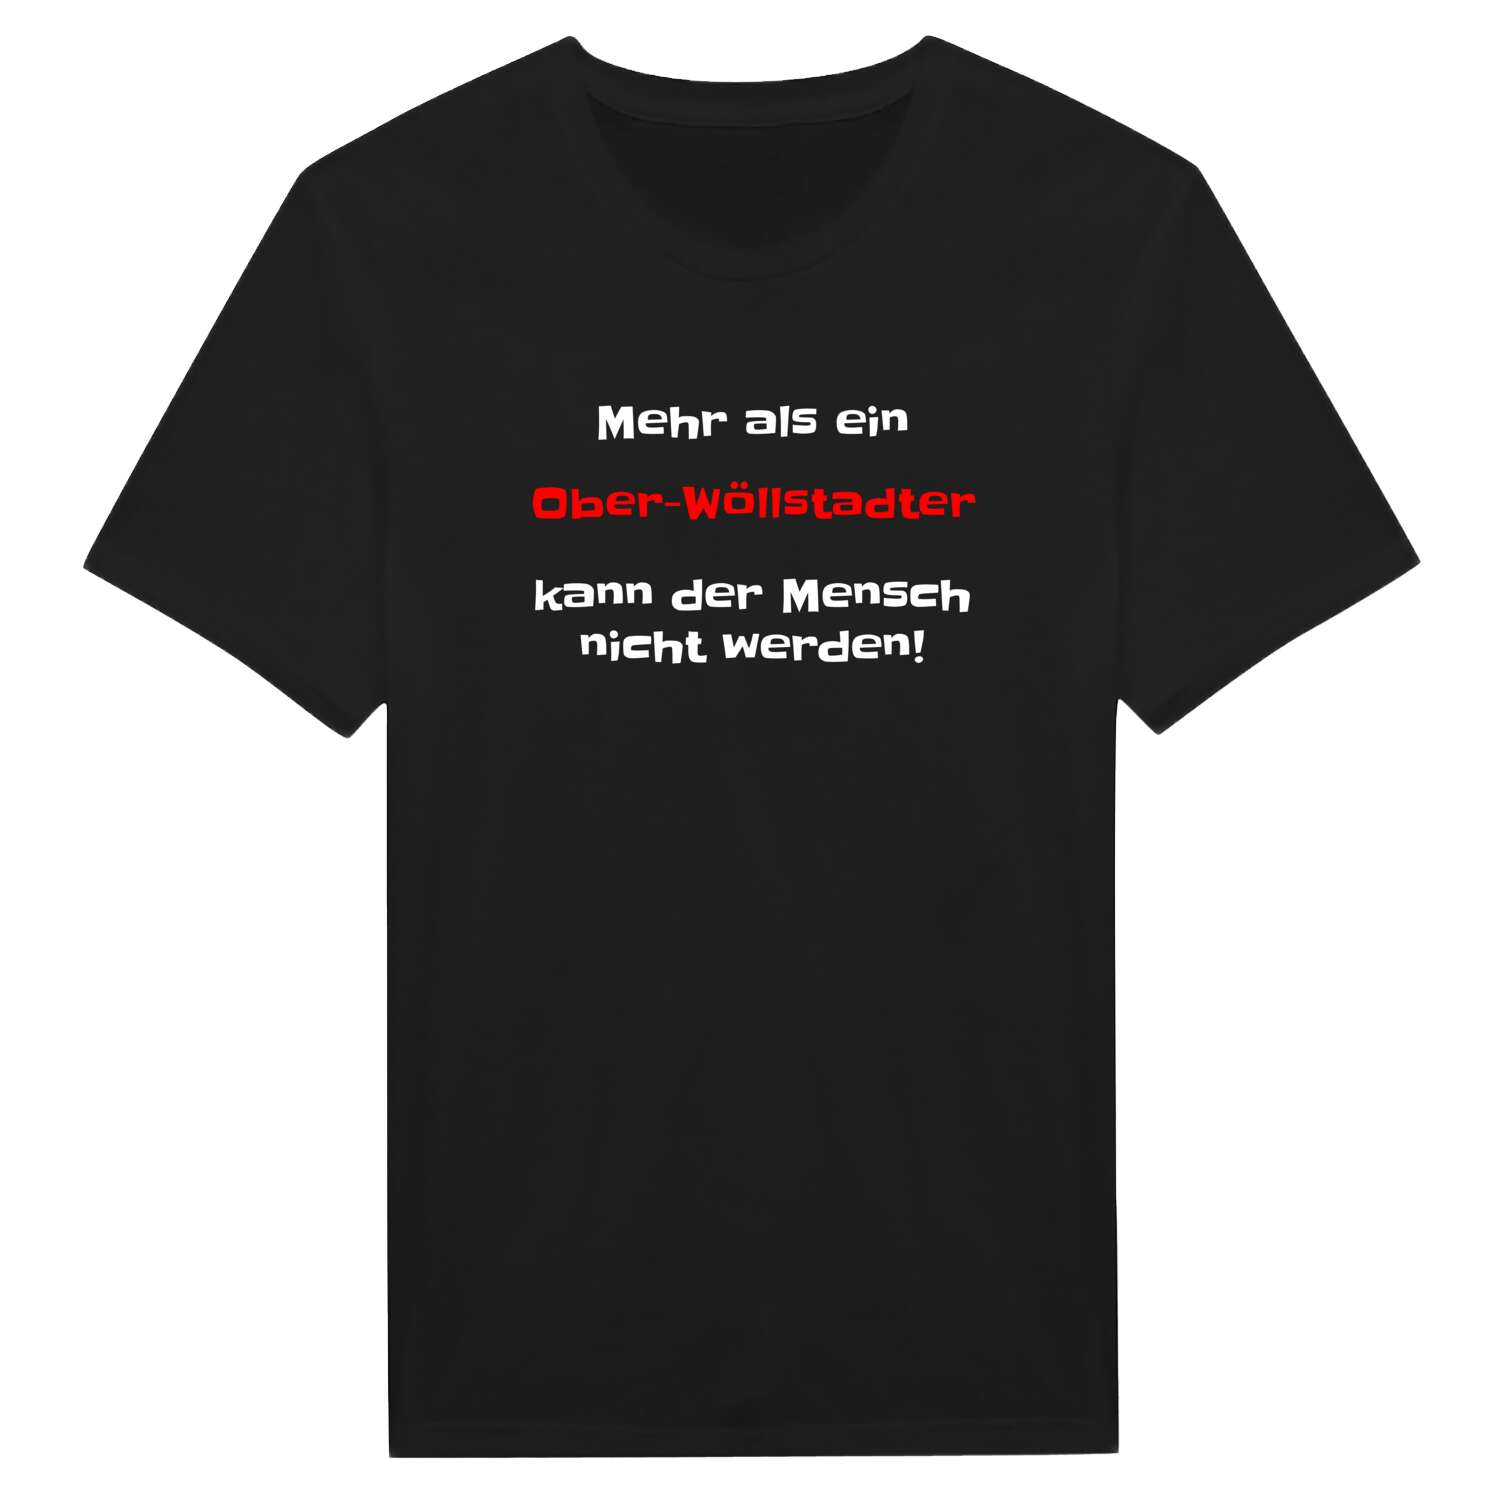 Ober-Wöllstadt T-Shirt »Mehr als ein«